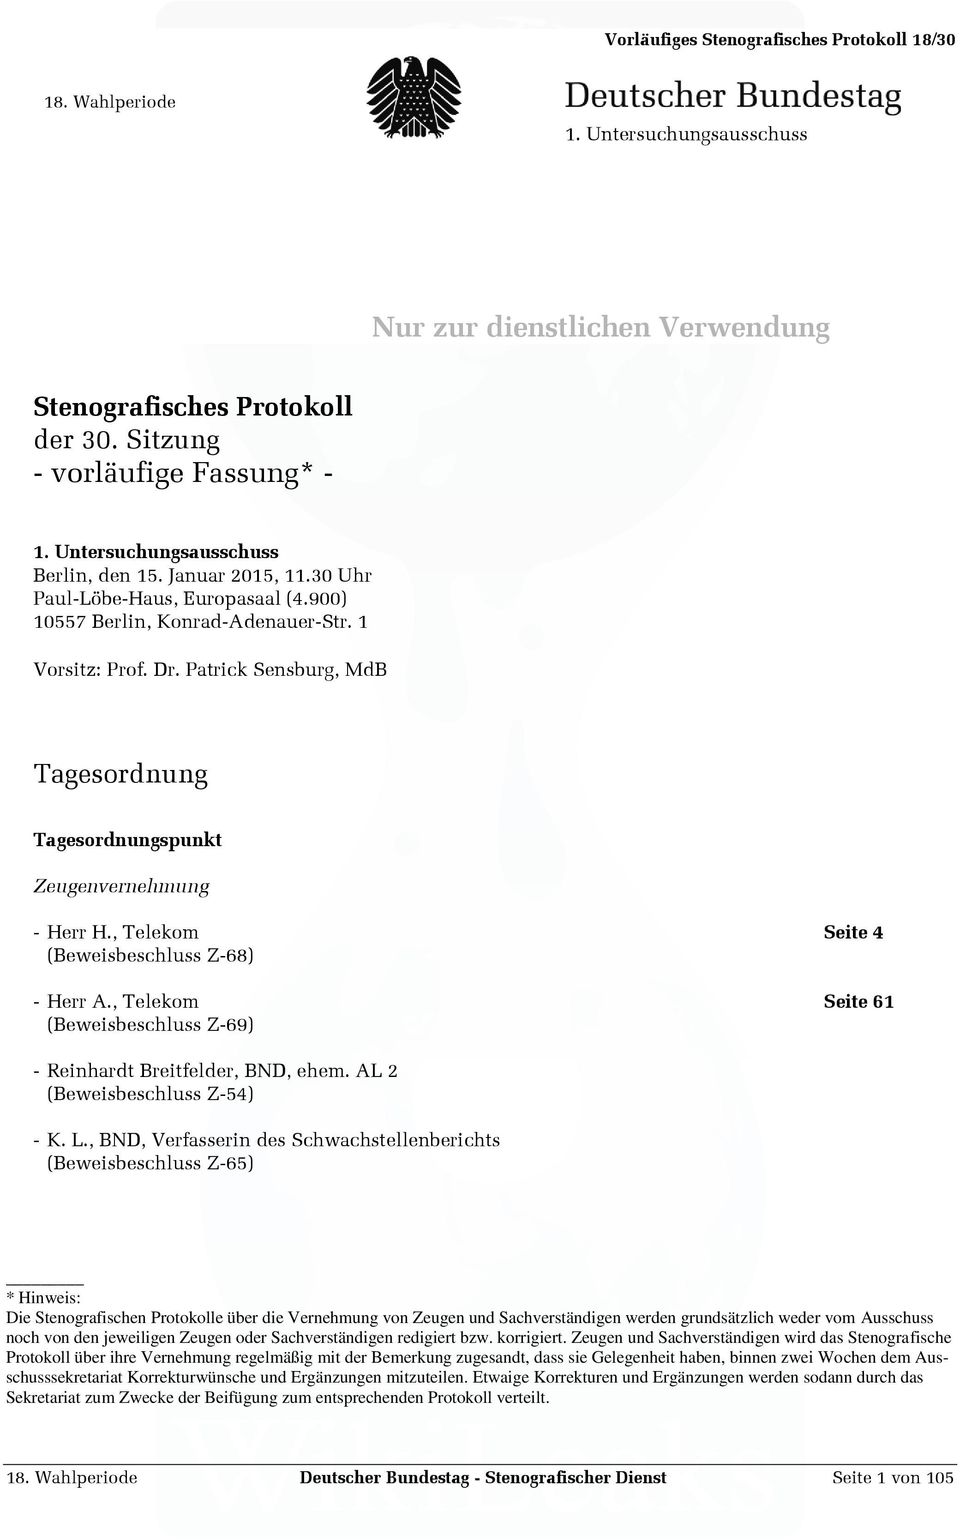 , Telekom Seite 61 (Beweisbeschluss Z-69) - Reinhardt Breitfelder, BND, ehem. AL 2 (Beweisbeschluss Z-54) - K. L.